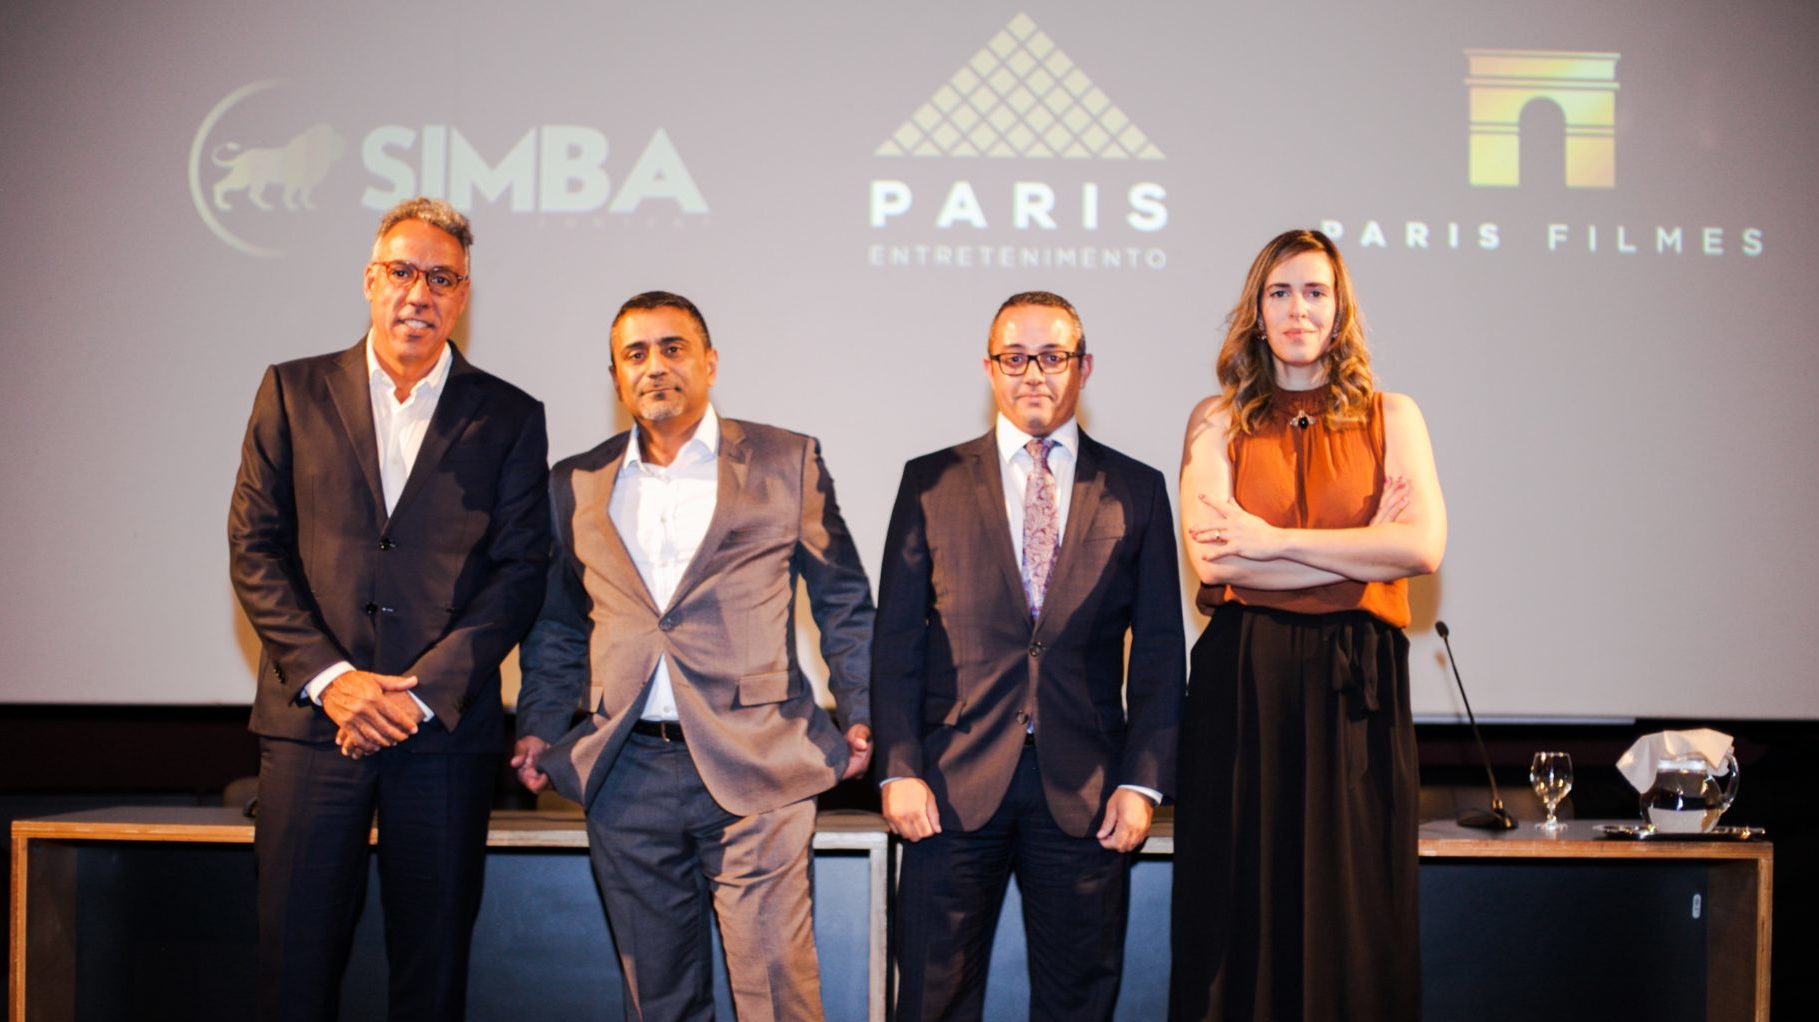 Simba Content, Paris Entretenimento e Paris Filmes